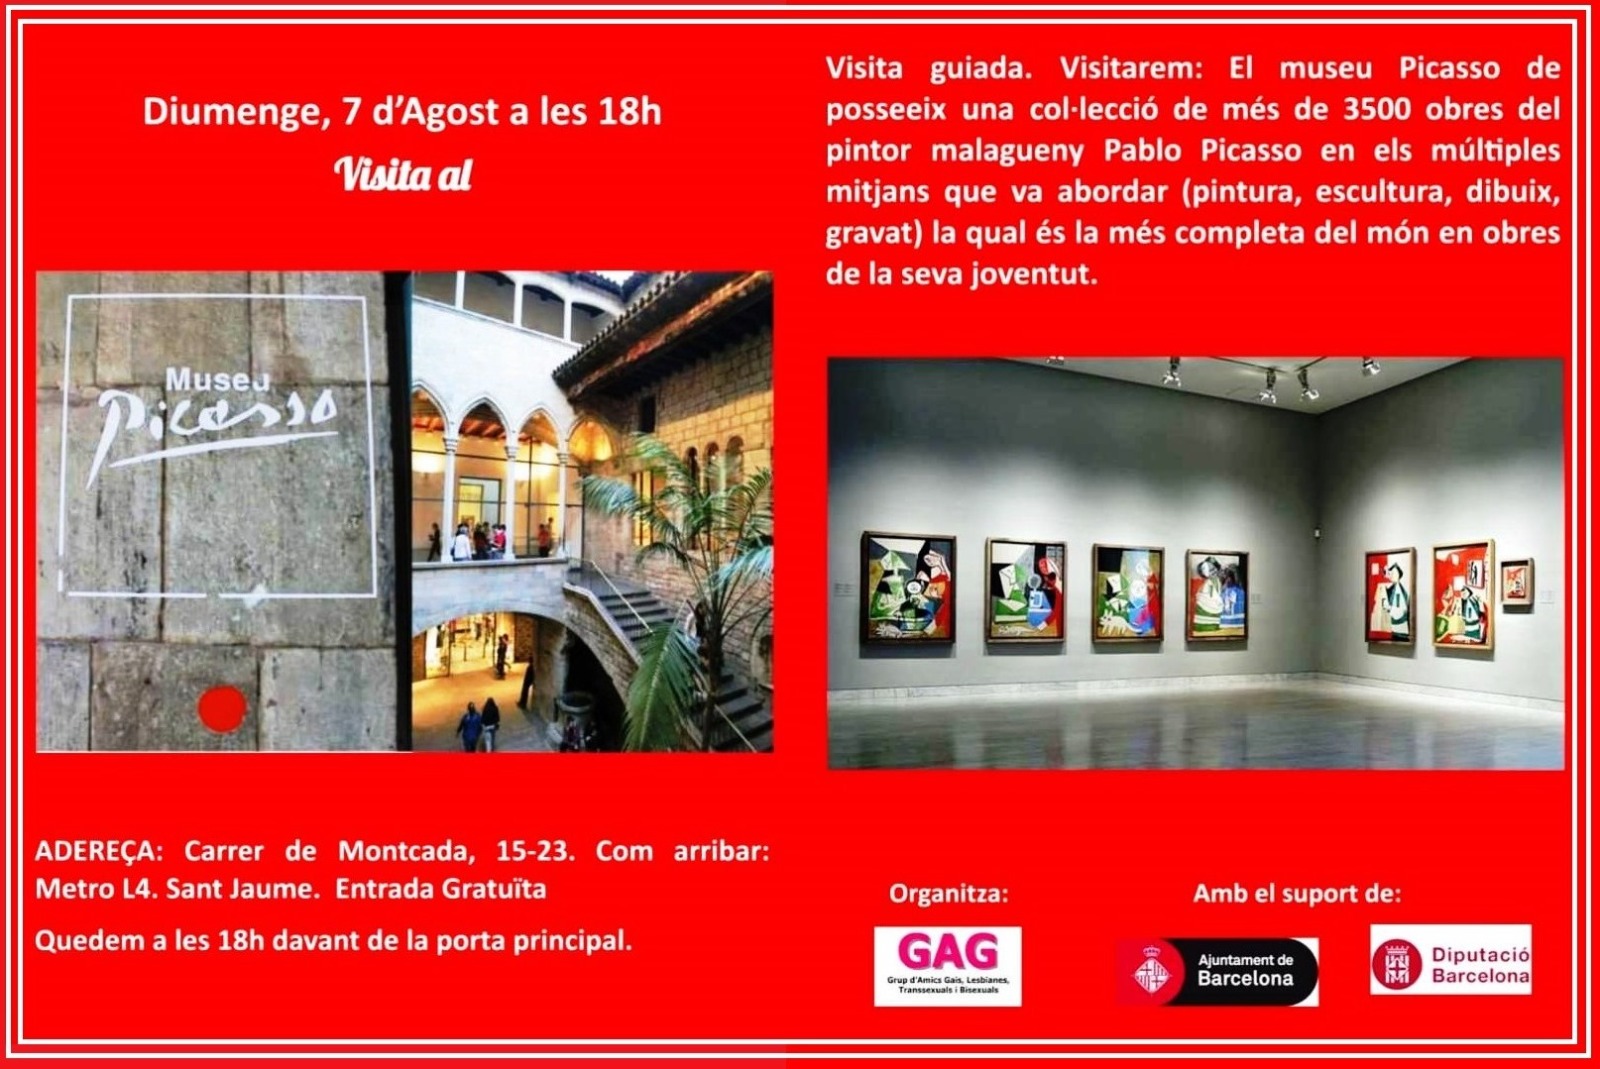 Domingo, 7 de agosto a las 18 h. Visita al Museu Picasso.